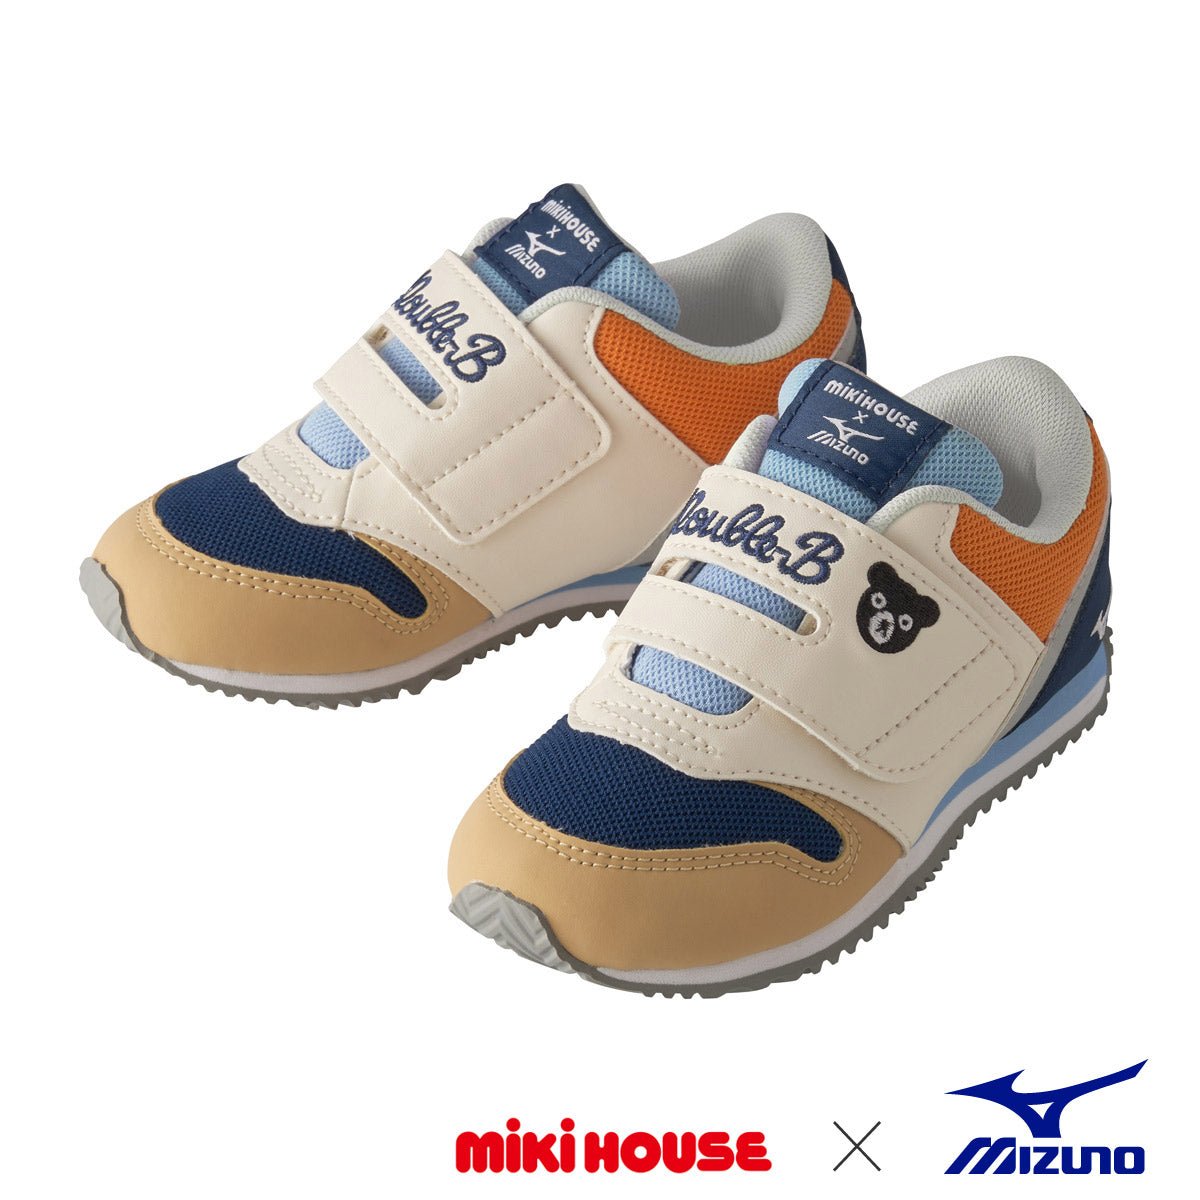 MIKI HOUSE & Mizuno Shoes for Kids - 61-9402-826-09-16